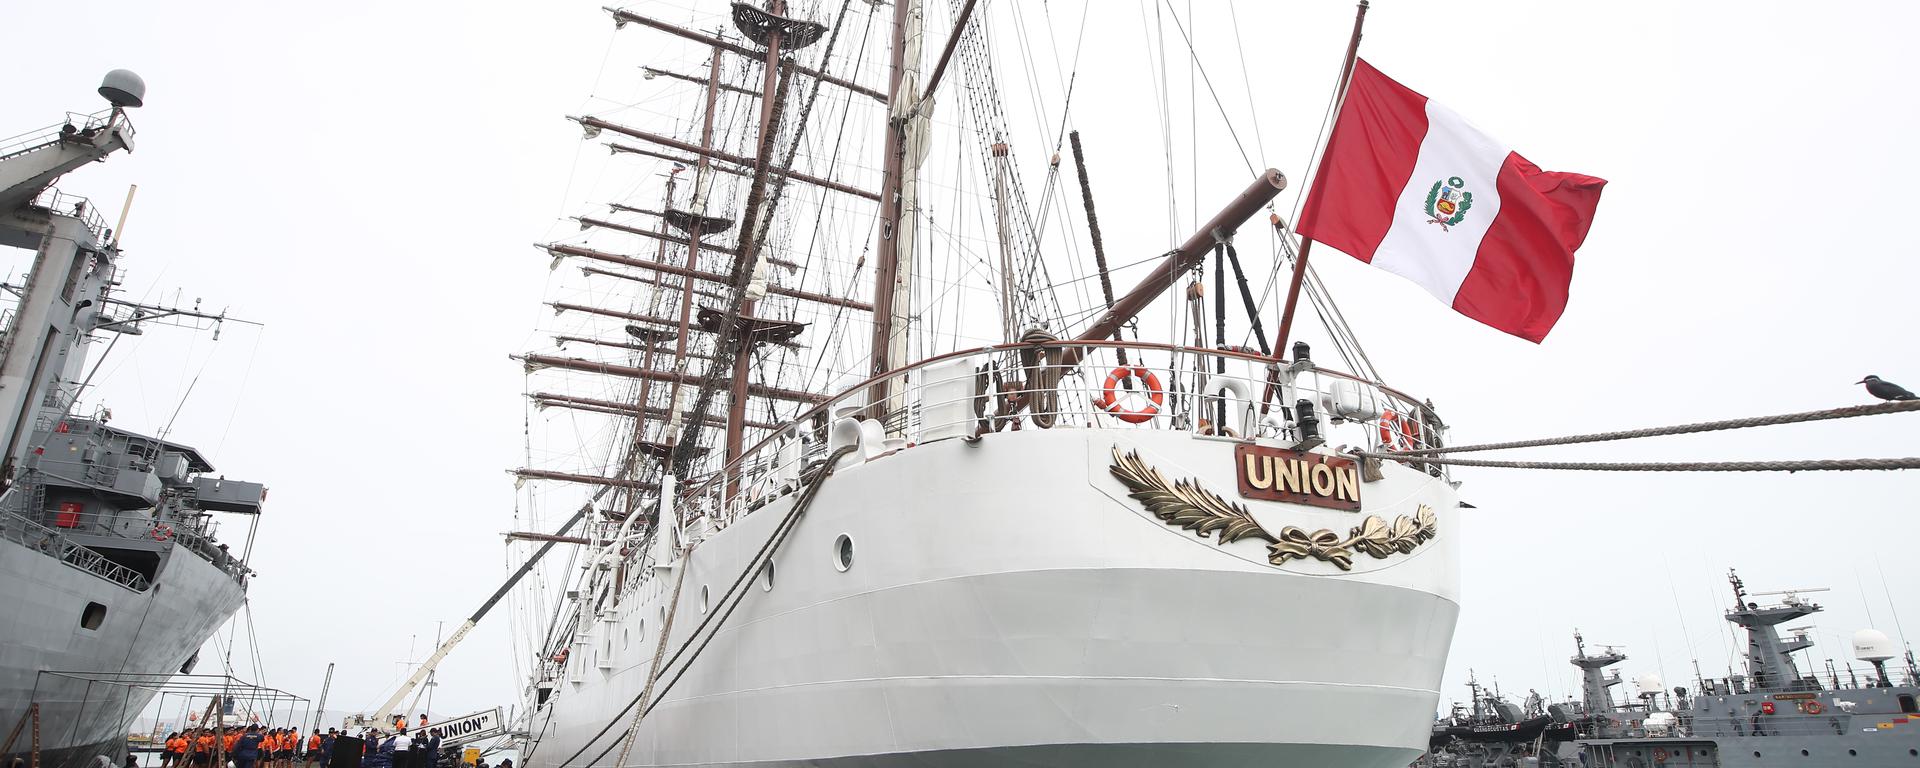 El B.A.P. Unión inicia la vuelta al mundo: ¿cómo es el buque por dentro?